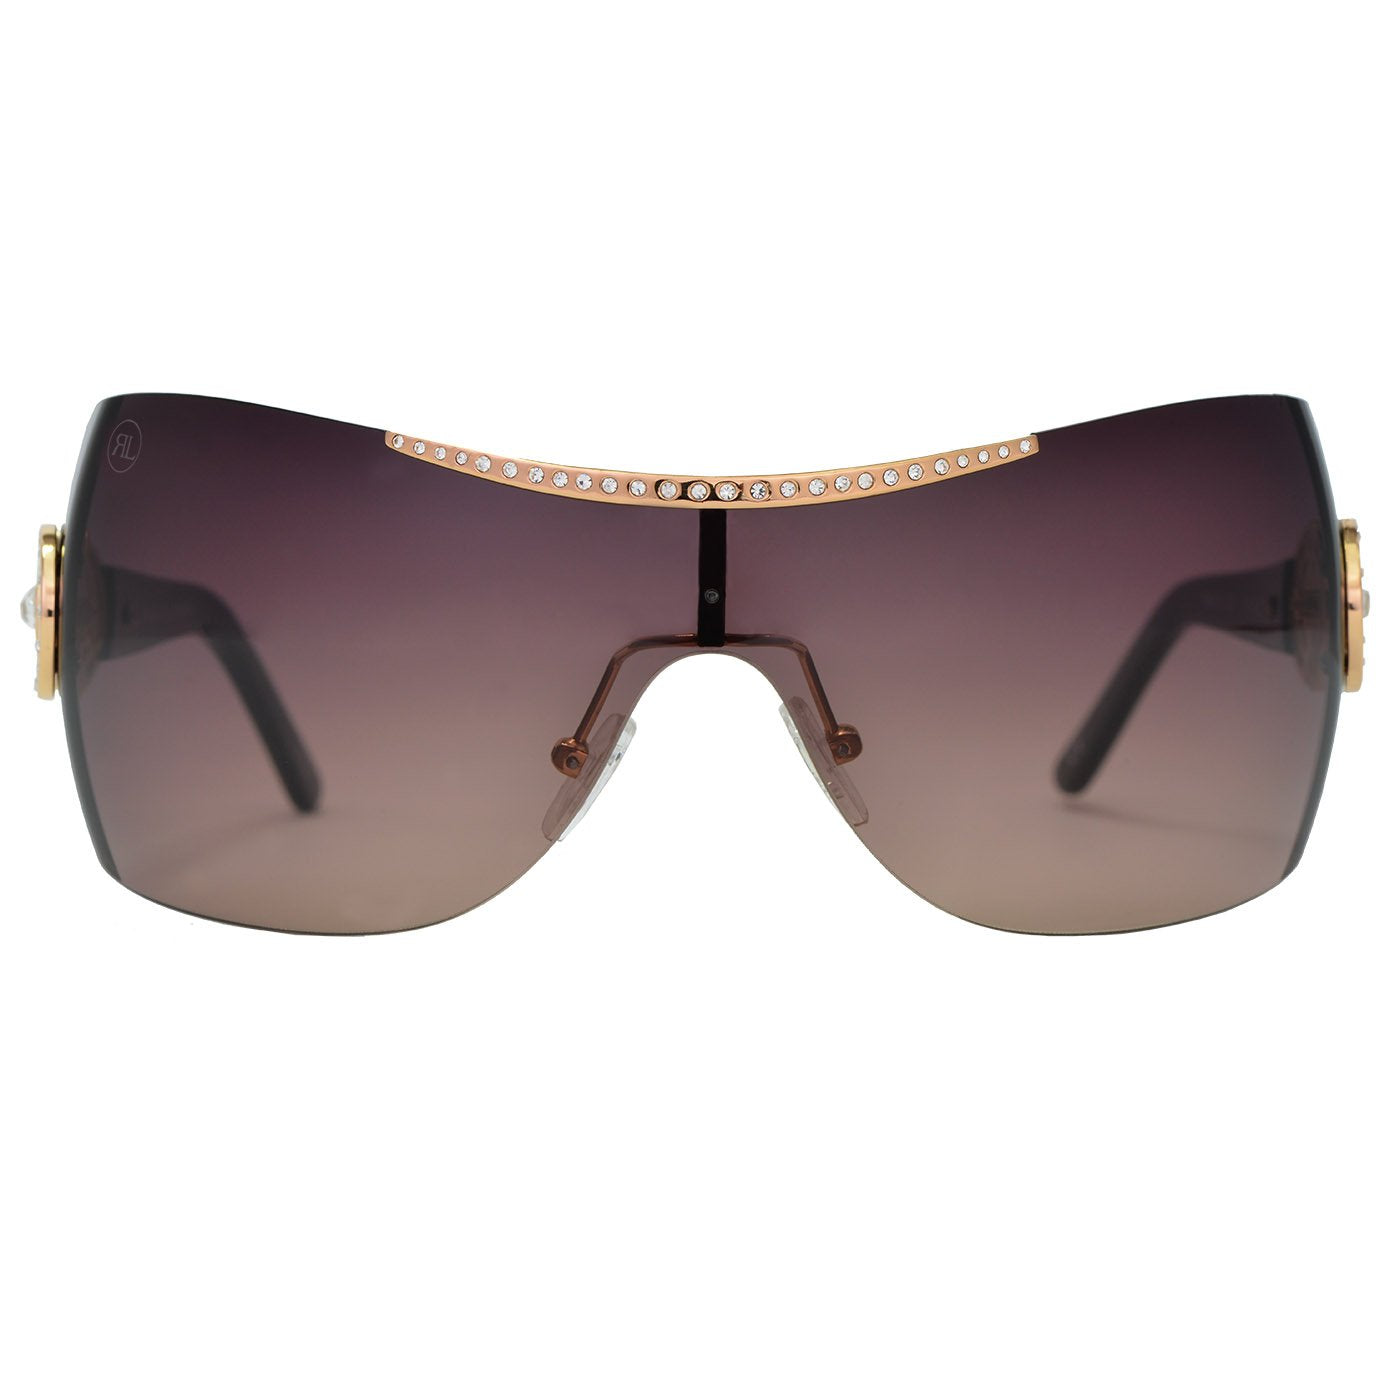 RENATO LANDINI Women's Sunglasses Gold & Brown with Stones/ Allure